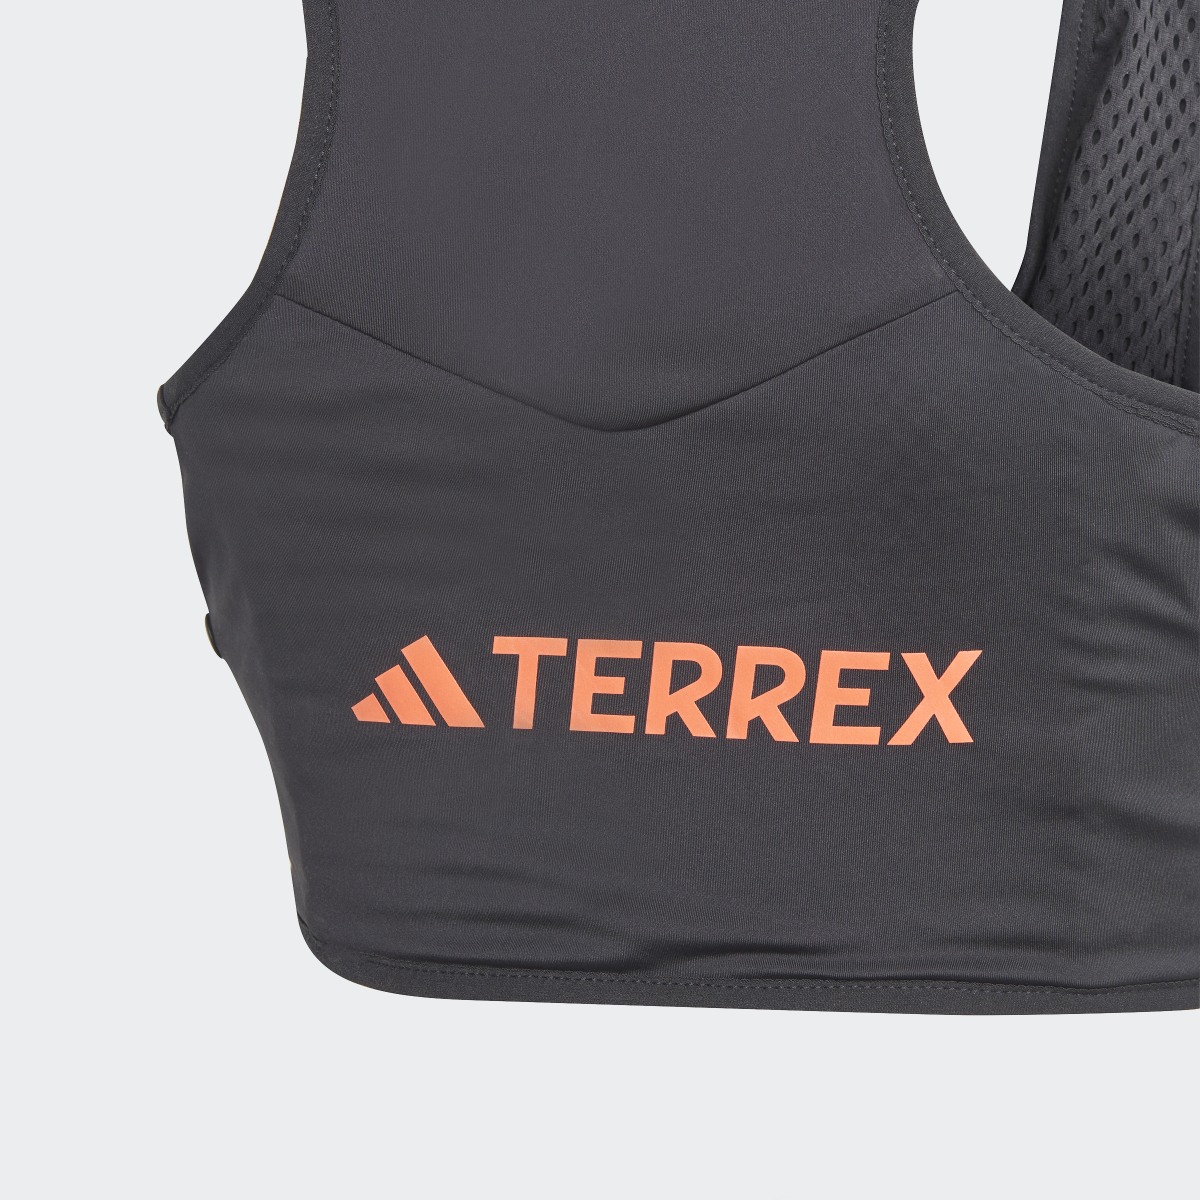 Adidas Terrex Trail Running Vest. 6